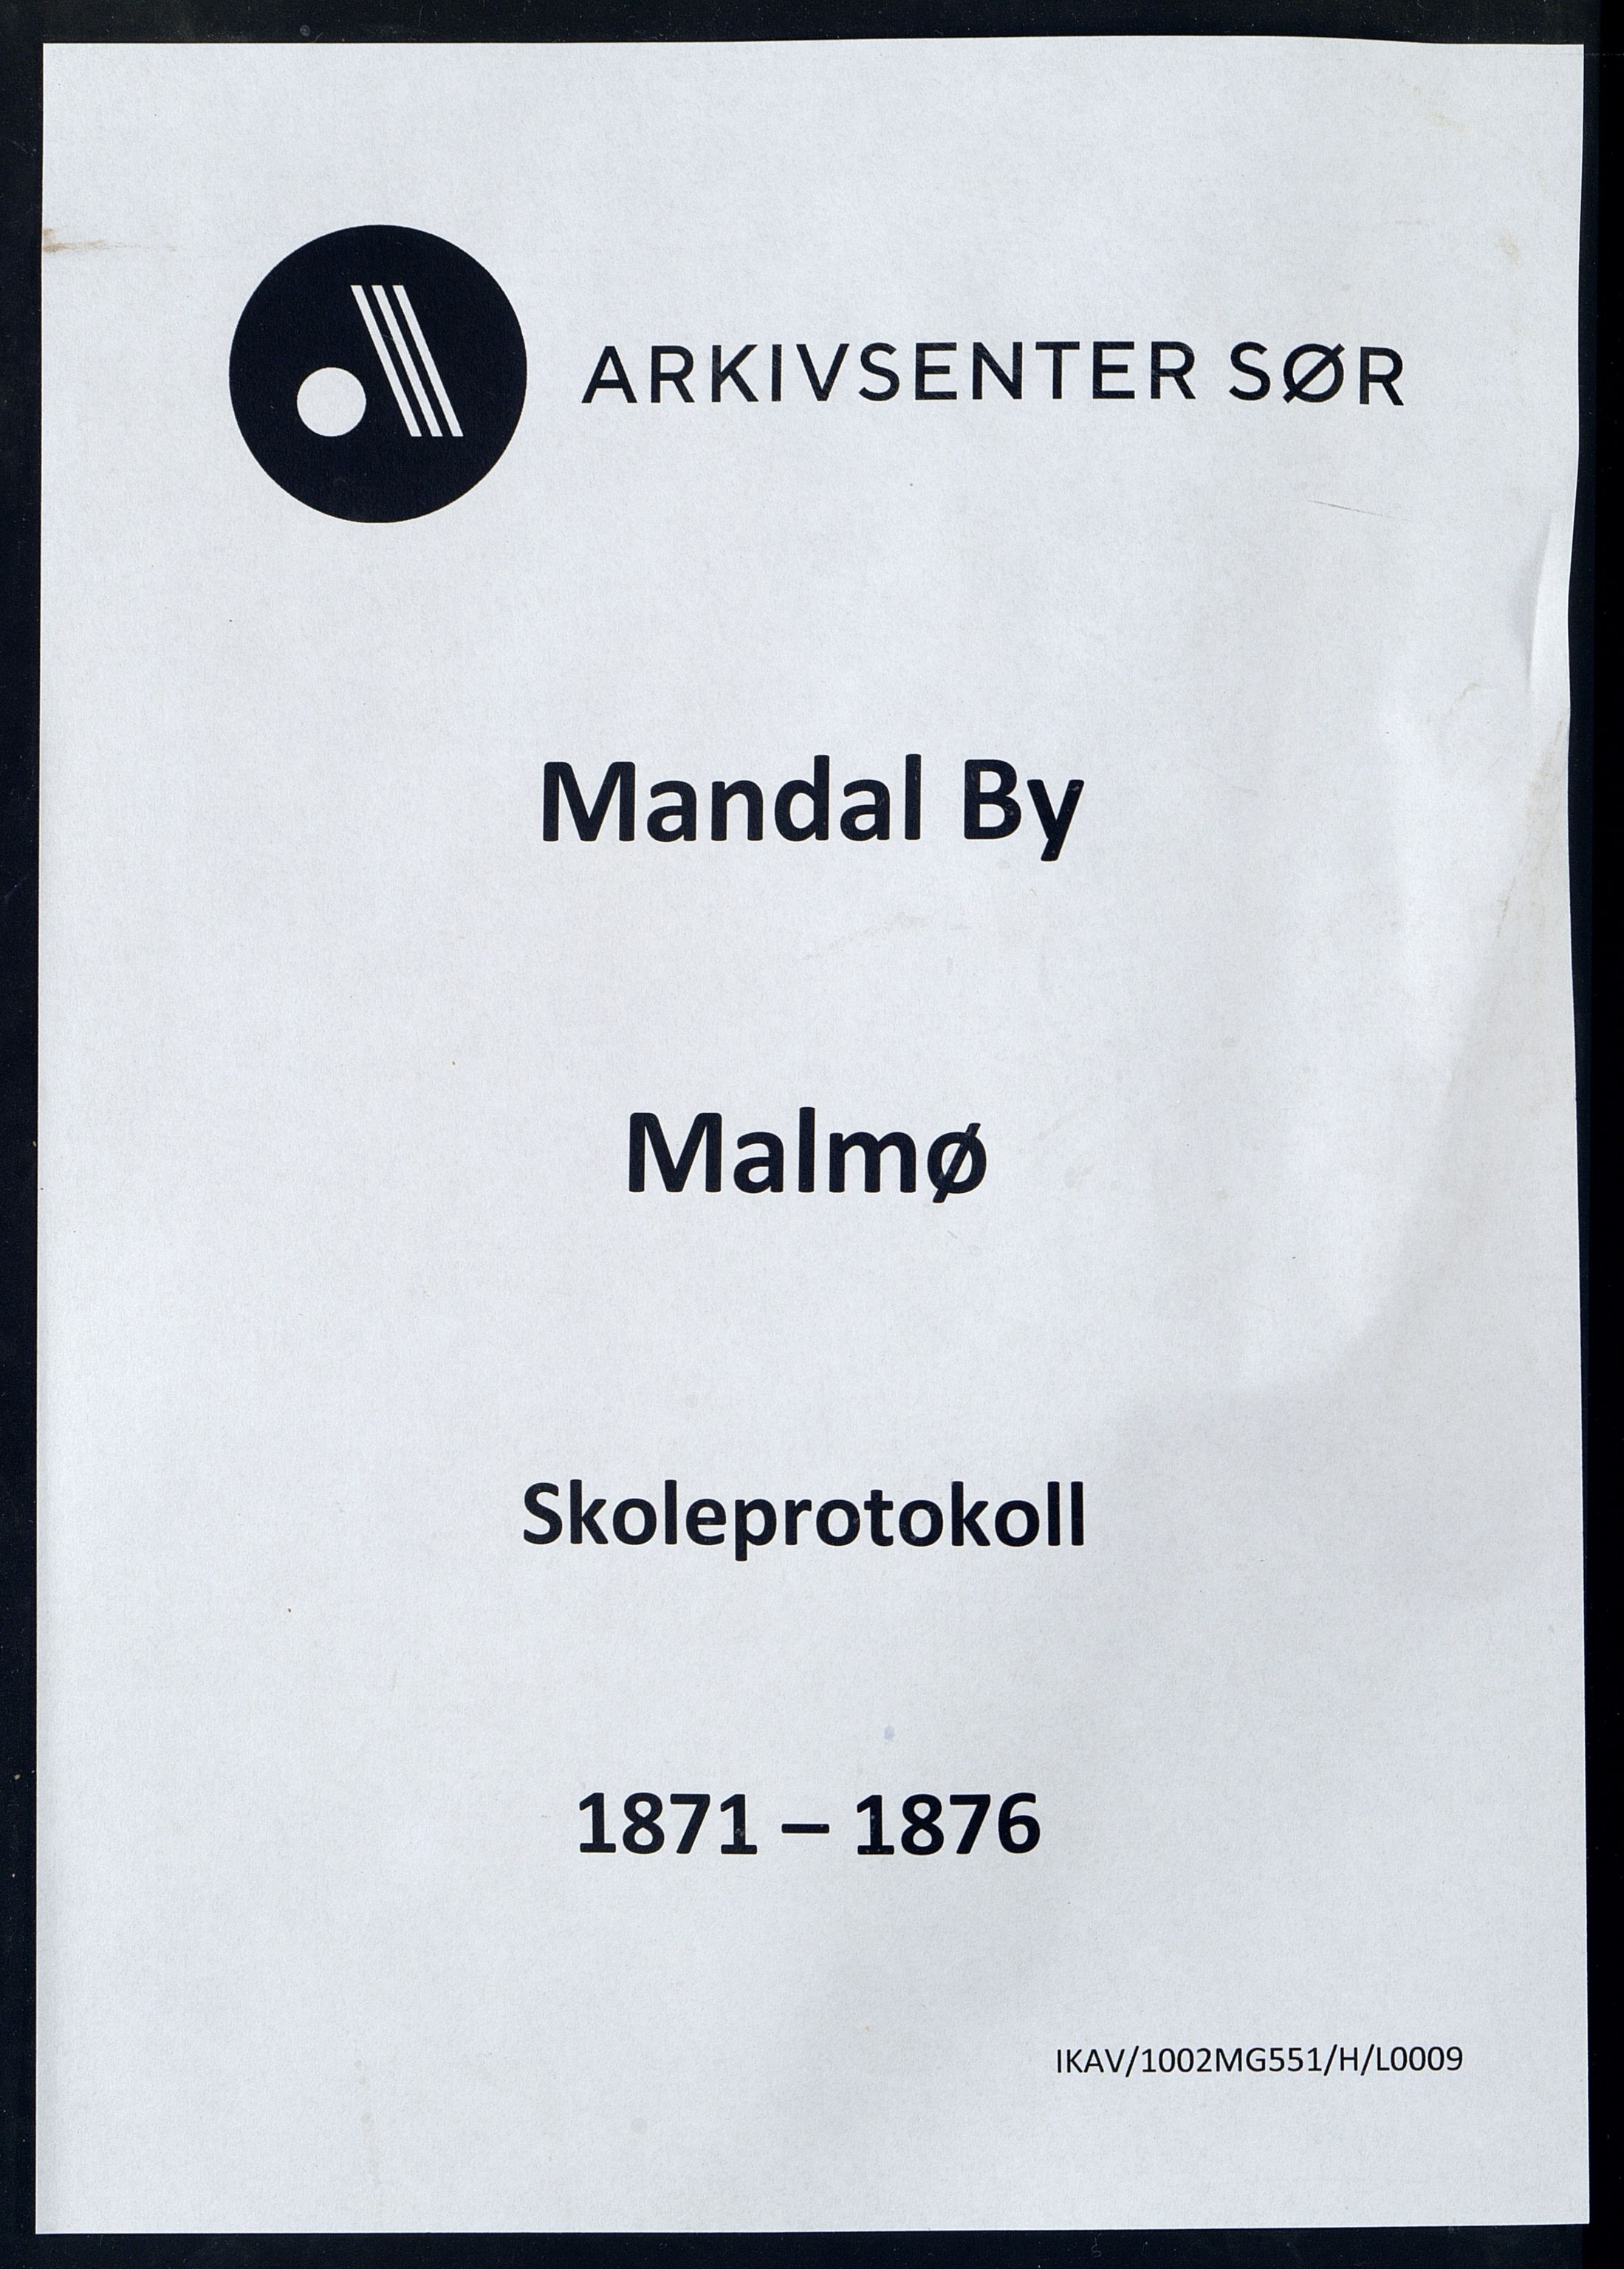 Mandal By - Mandal Allmueskole/Folkeskole/Skole, IKAV/1002MG551/H/L0009: Skoleprotokoll, 1871-1876